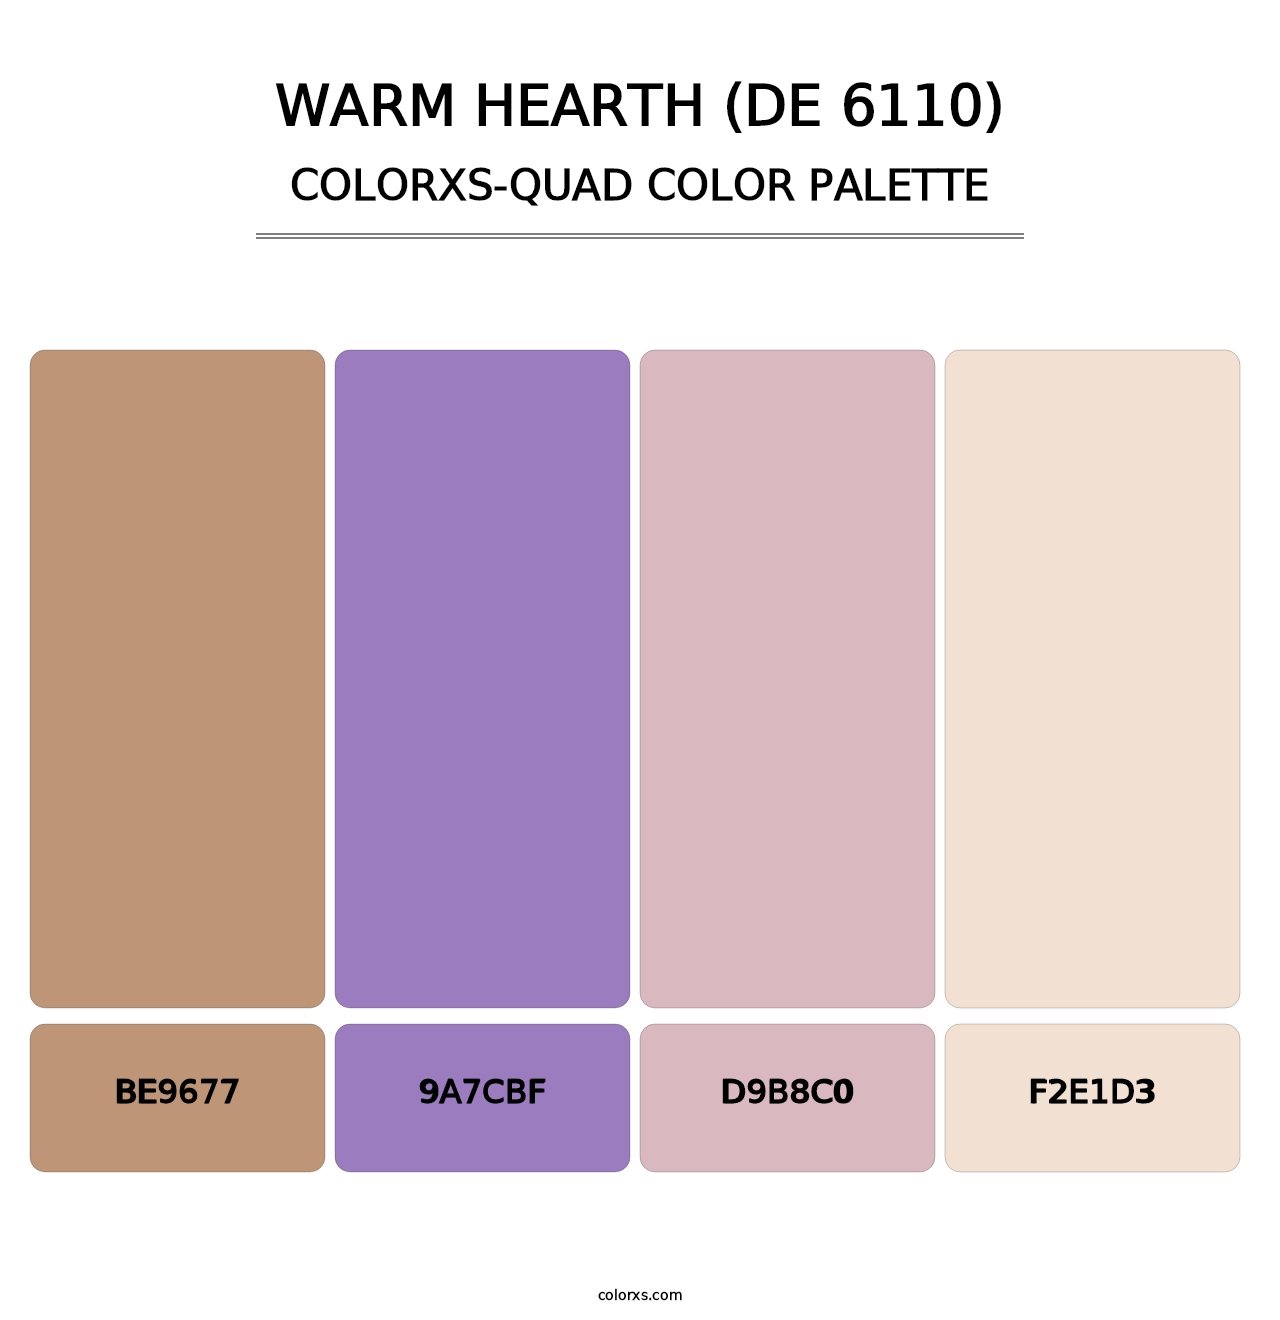 Warm Hearth (DE 6110) - Colorxs Quad Palette